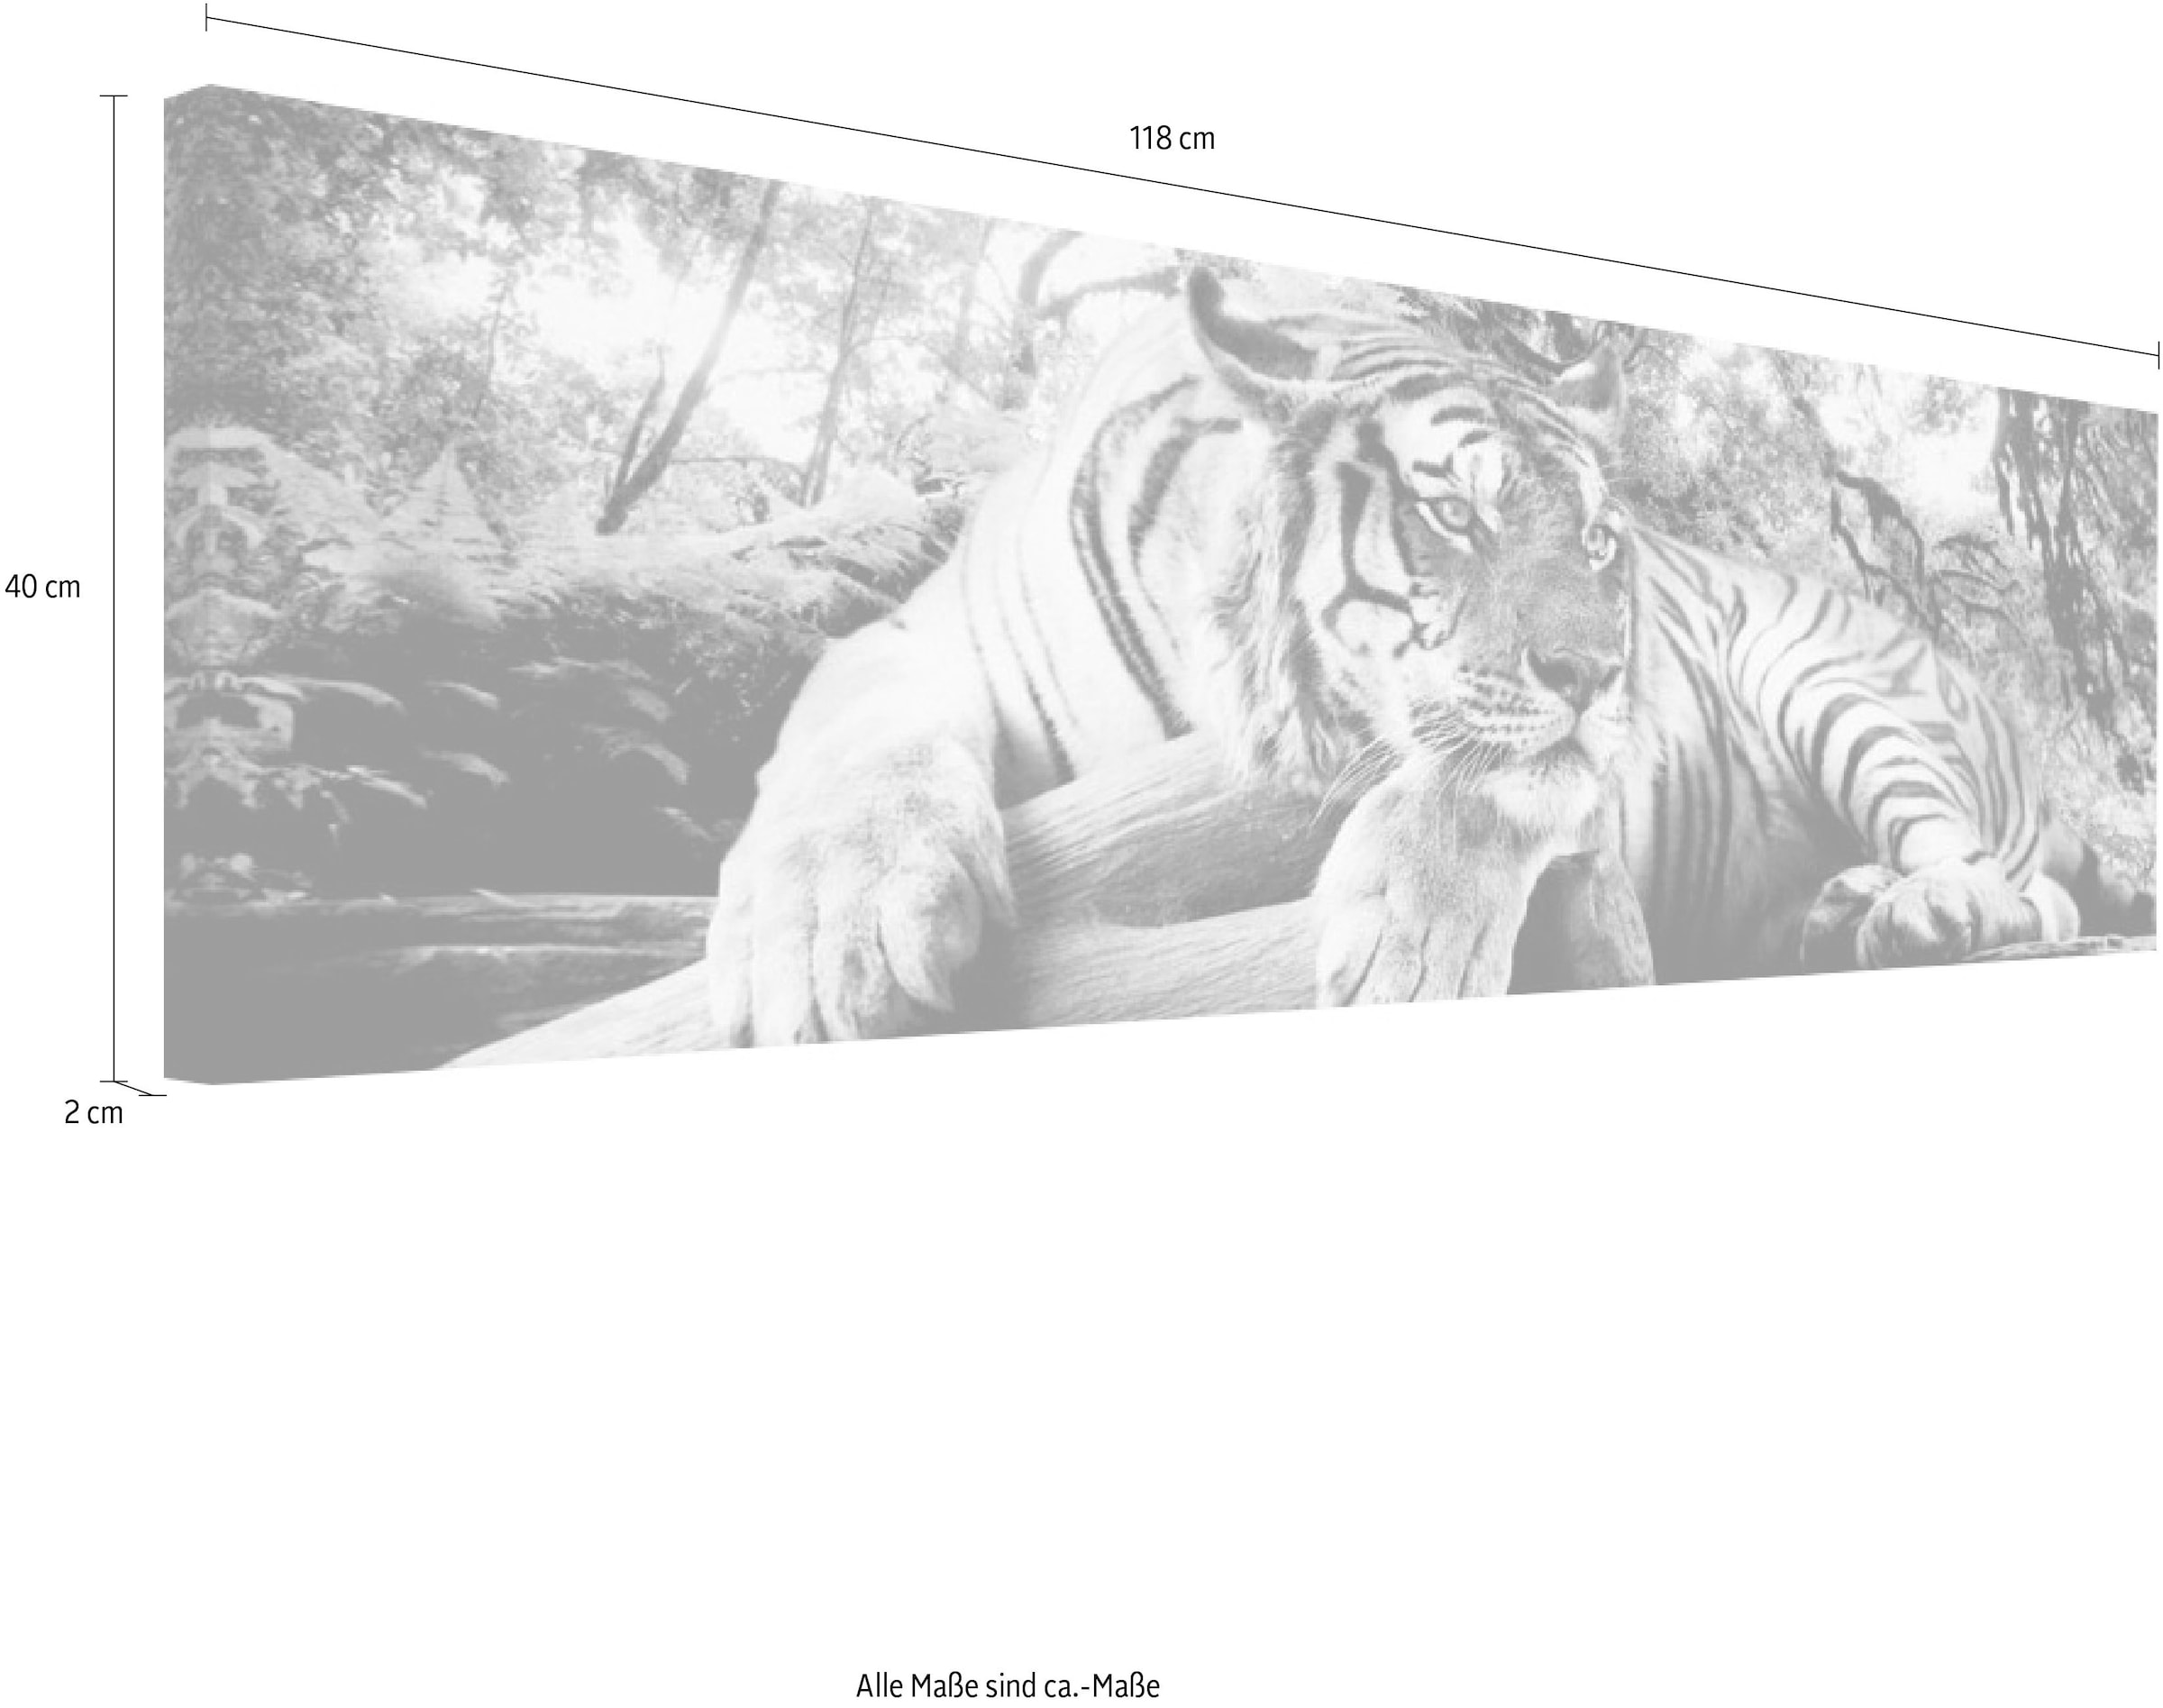 Reinders! Wandbild »Tigerblick Wandbild Tiger - Raubtier - Wandbild  Wohnzimmer - Wandbild« bequem kaufen